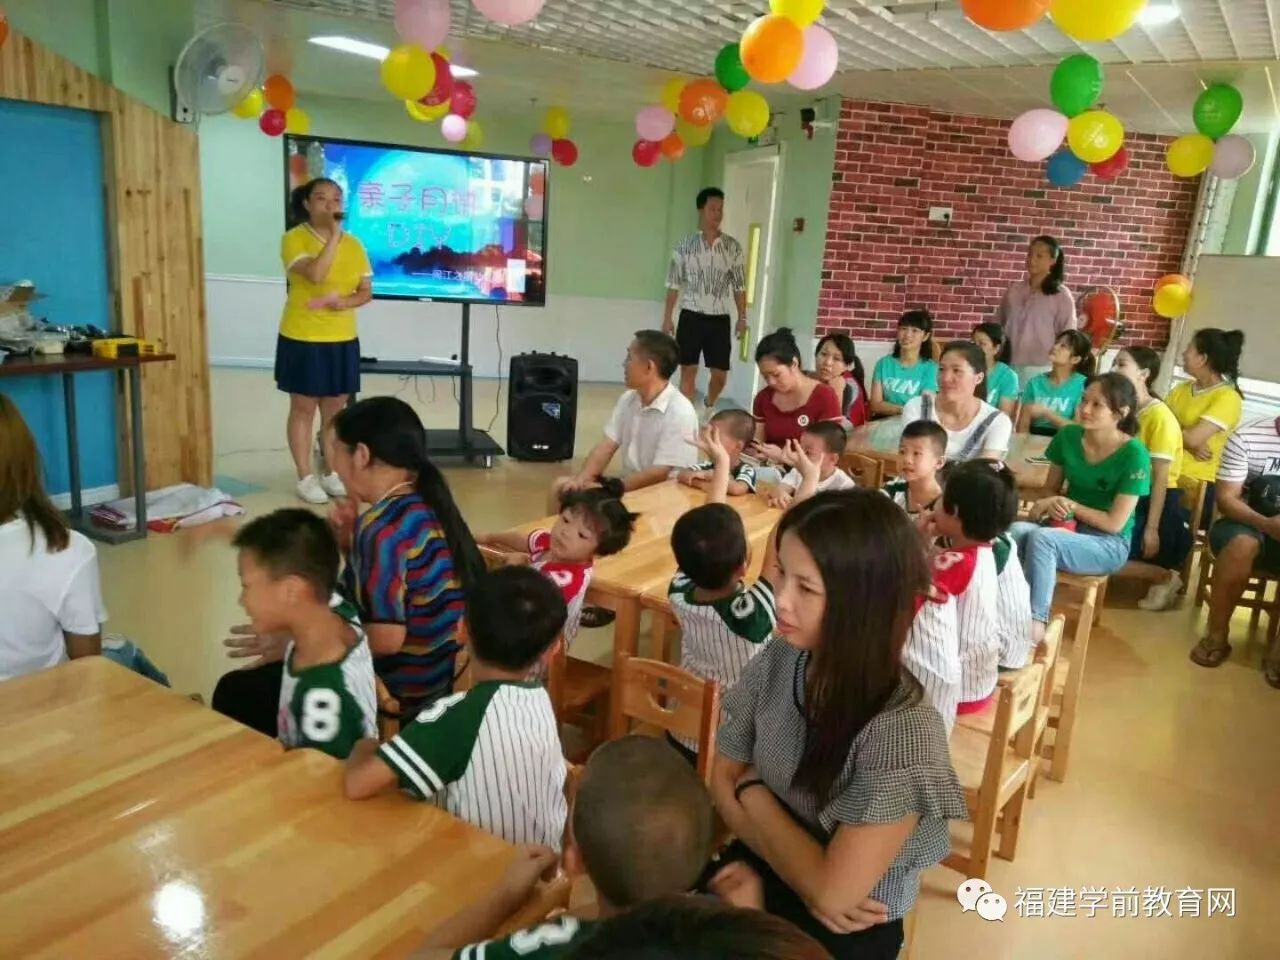 幼儿园招聘保育员_合肥上海世界外国语幼儿园招聘保育员,工作地点就在家门口